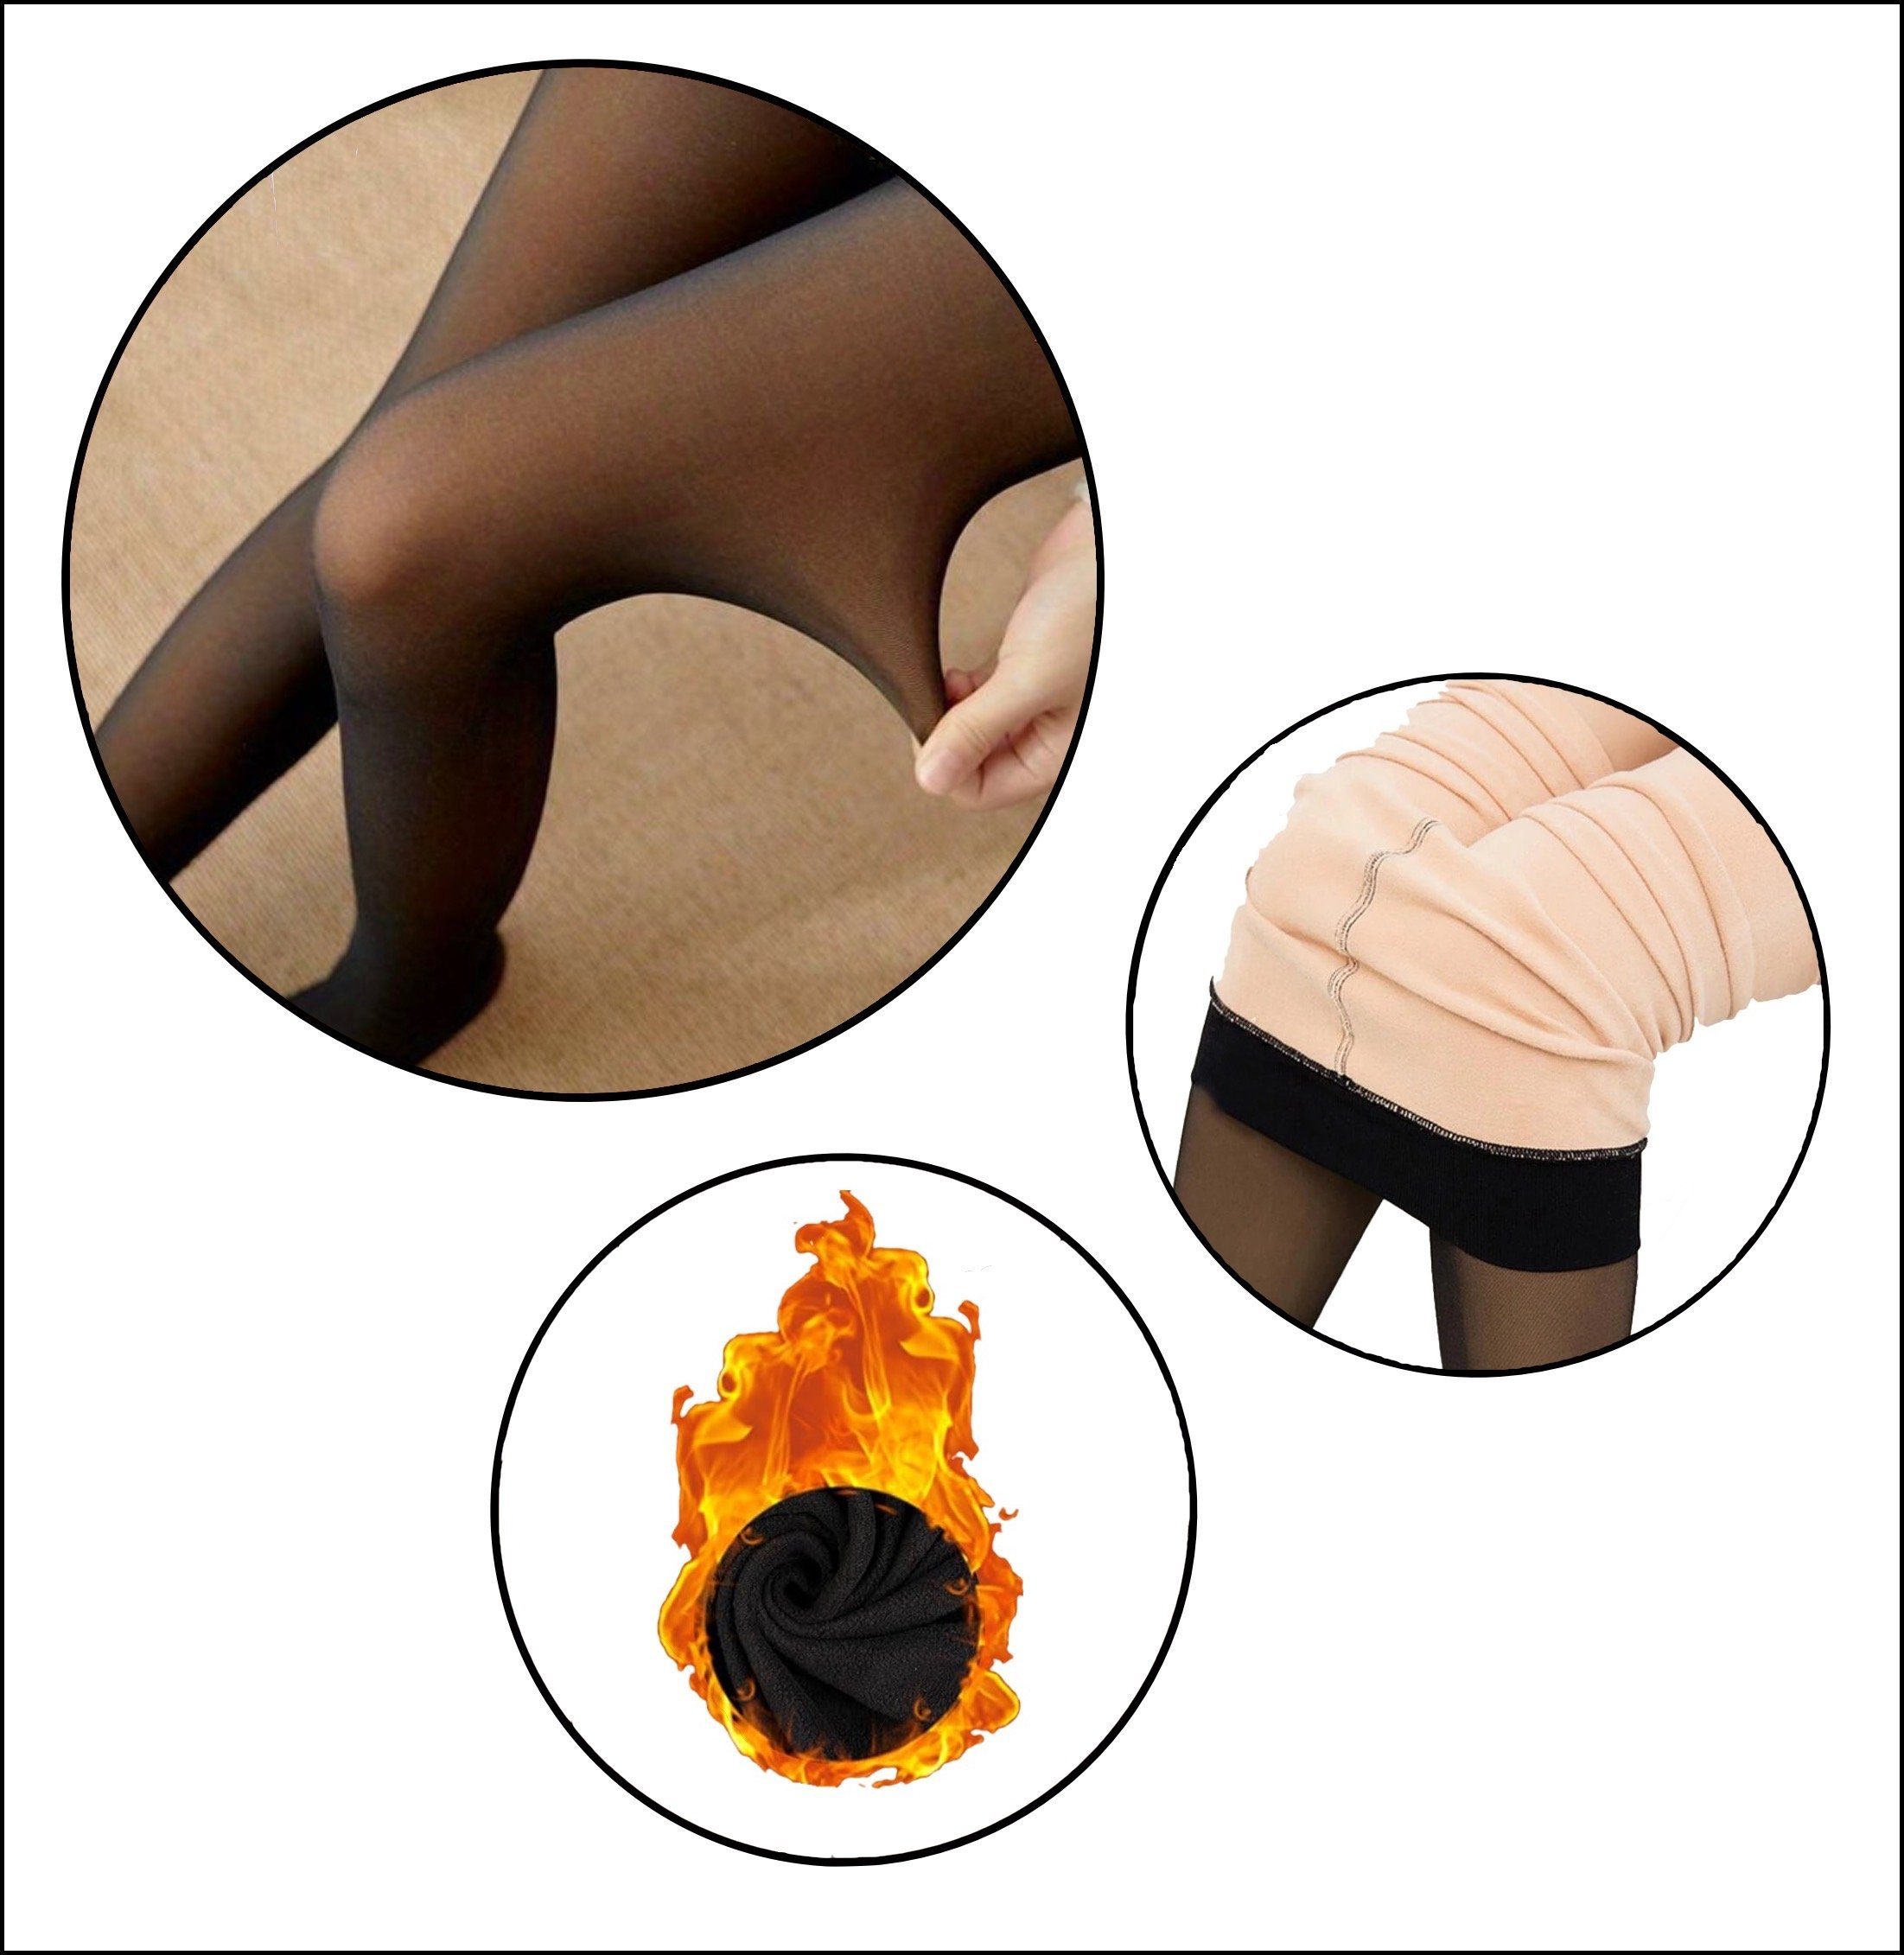 schwarz gefütterte St) Innenfleece Thermostrumpfhose (1 Cocain Komfortbund Thermo Strumpfhose Blickdicht underwear